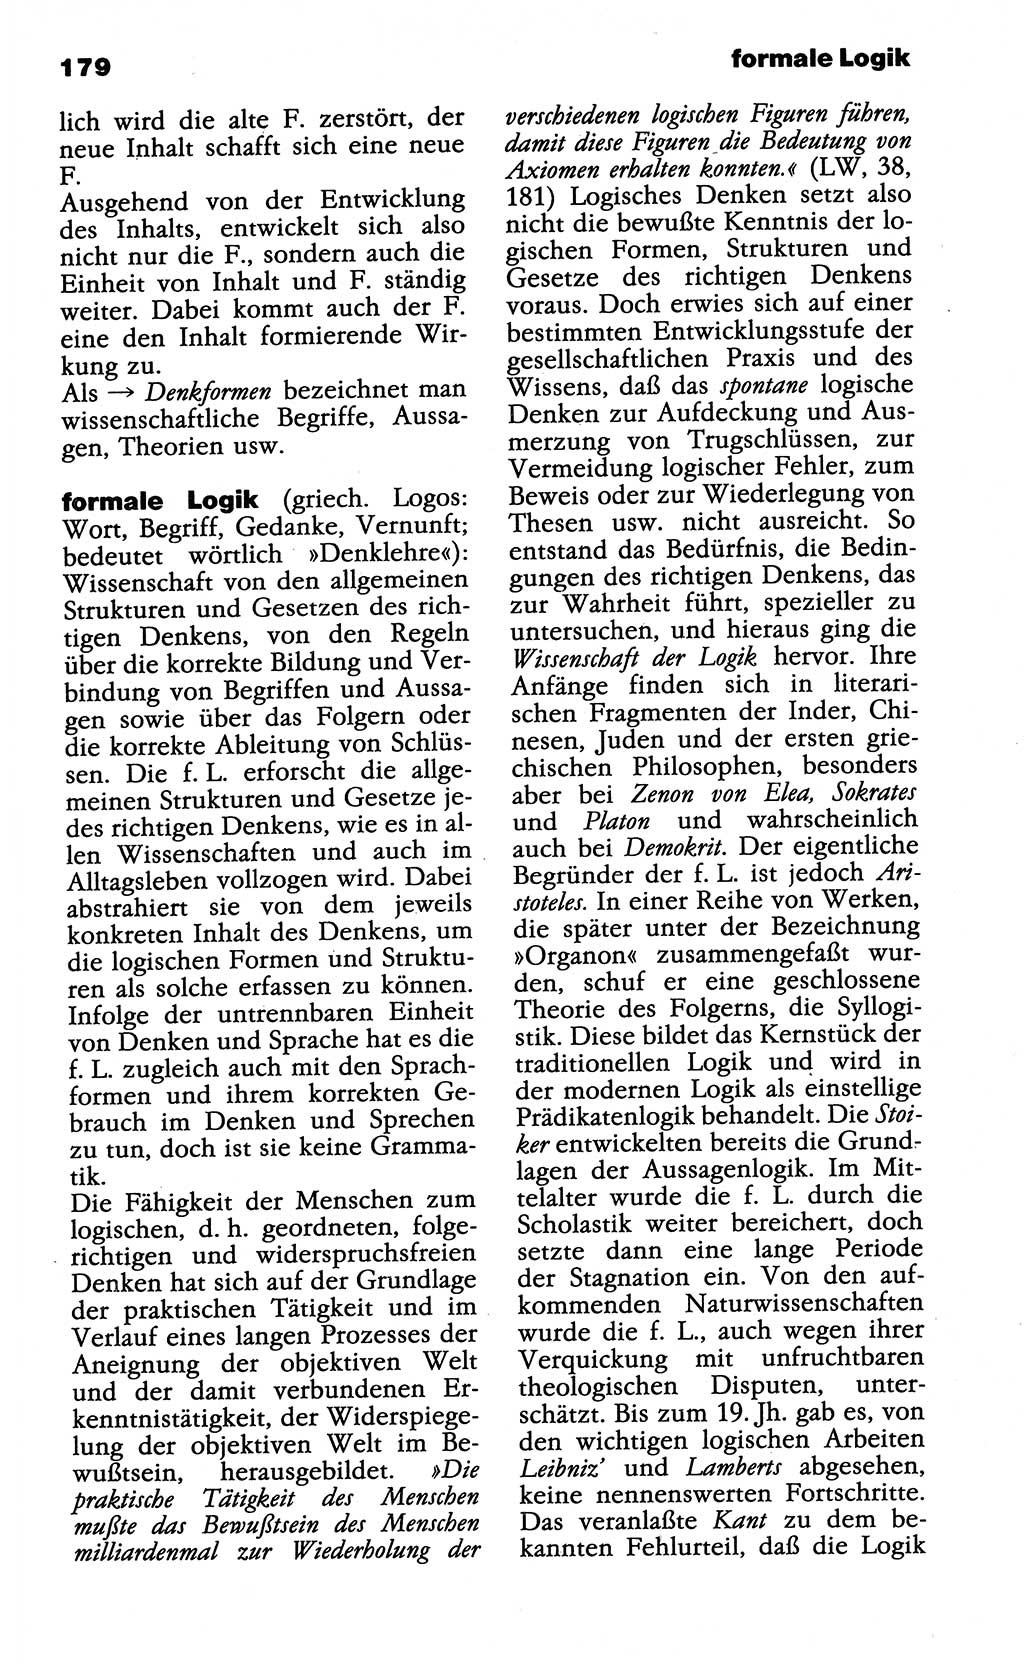 Wörterbuch der marxistisch-leninistischen Philosophie [Deutsche Demokratische Republik (DDR)] 1985, Seite 179 (Wb. ML Phil. DDR 1985, S. 179)